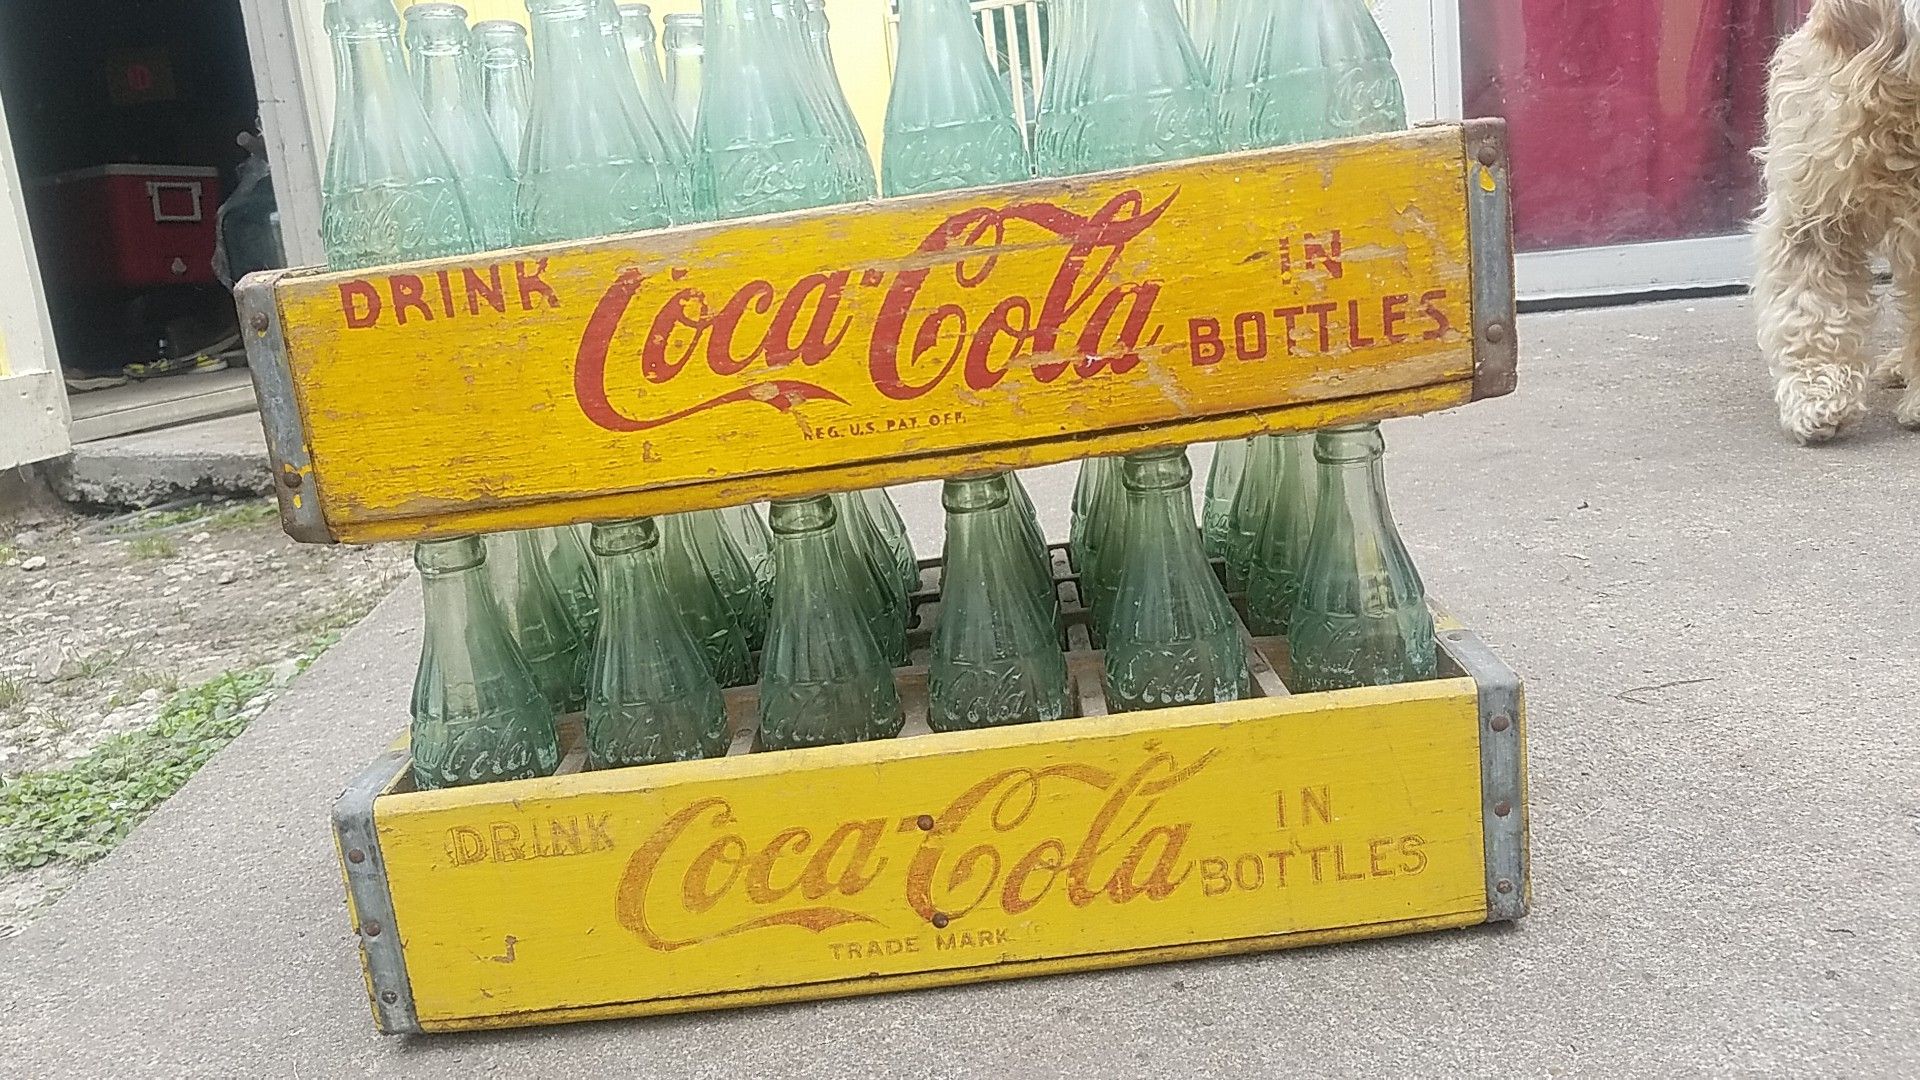 Antique coca cola bottles and crates